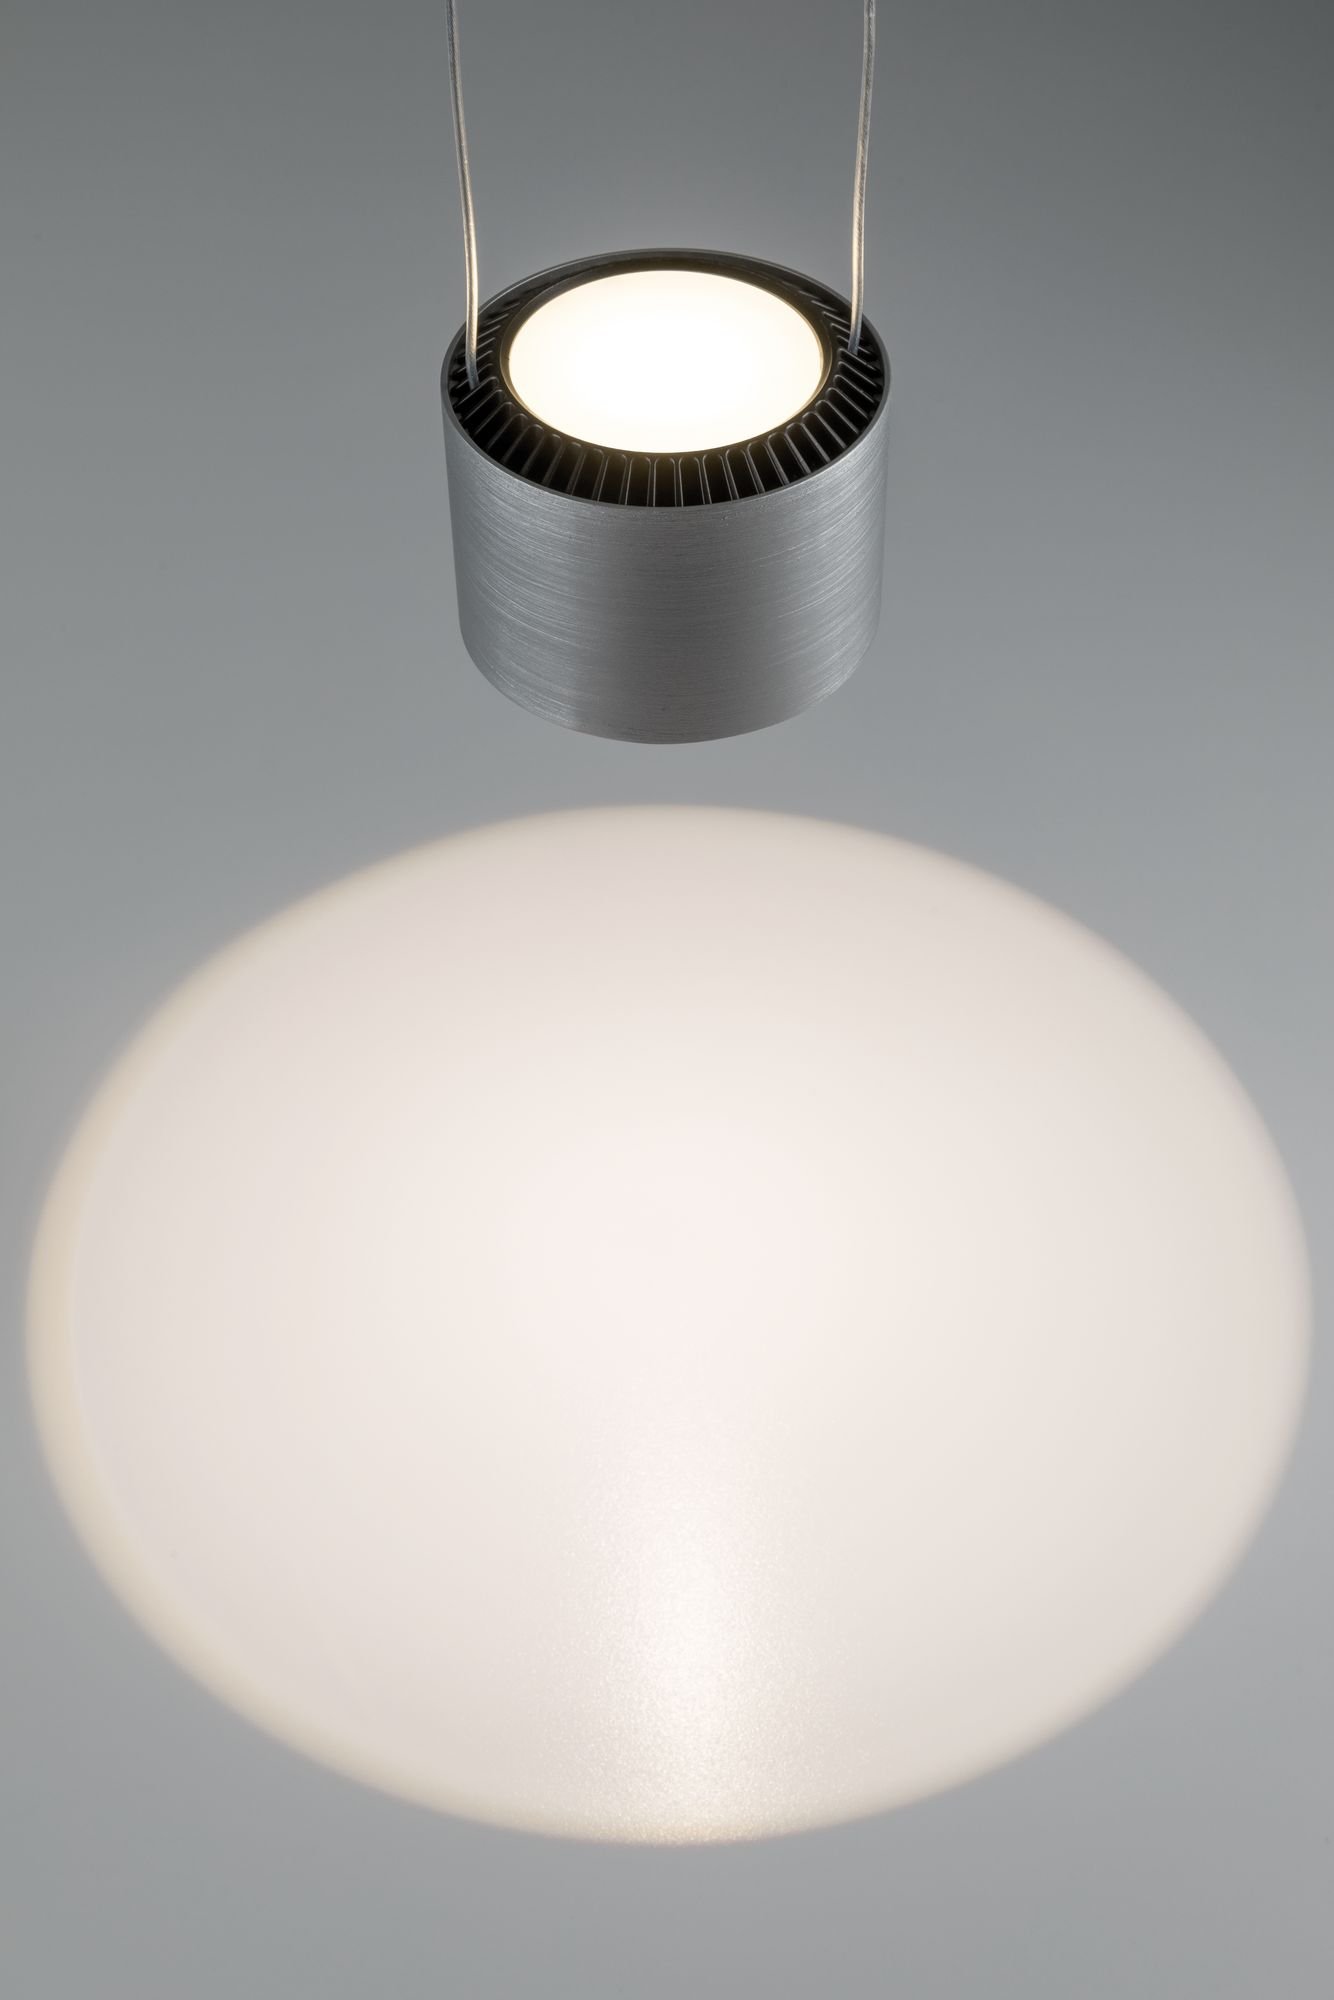 LED-hanglamp Aldan 2700K 450lm / 450lm 3x5 / 3x4W Zwart/Alu geborsteld dimbaar